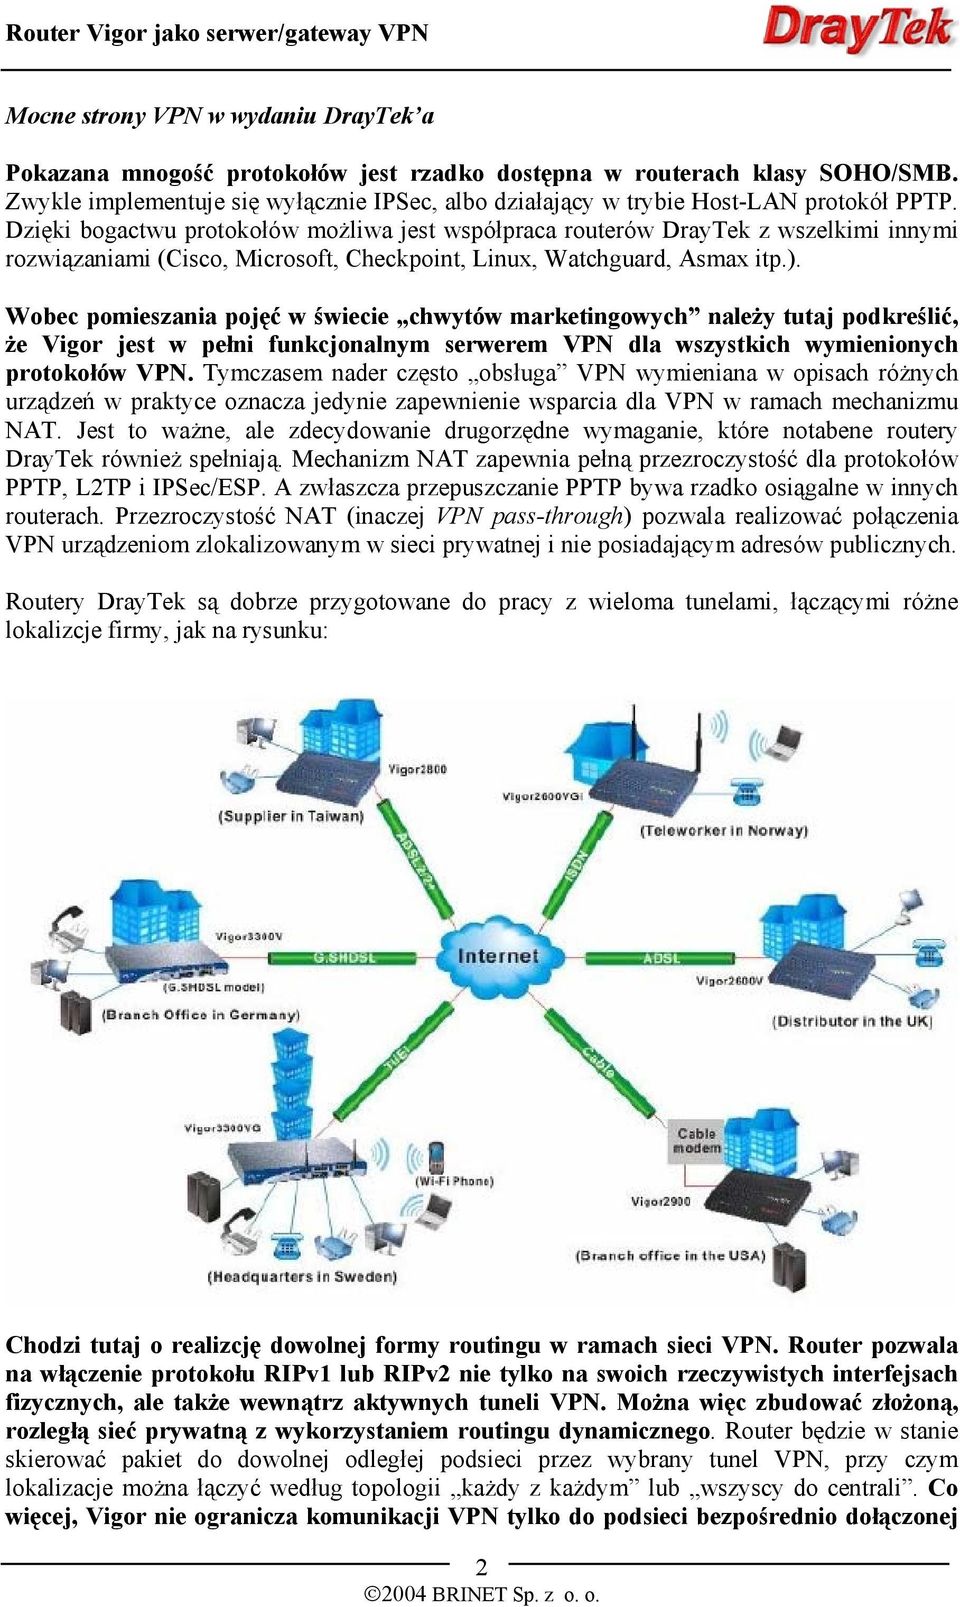 Dzięki bogactwu protokołów możliwa jest współpraca routerów DrayTek z wszelkimi innymi rozwiązaniami (Cisco, Microsoft, Checkpoint, Linux, Watchguard, Asmax itp.).